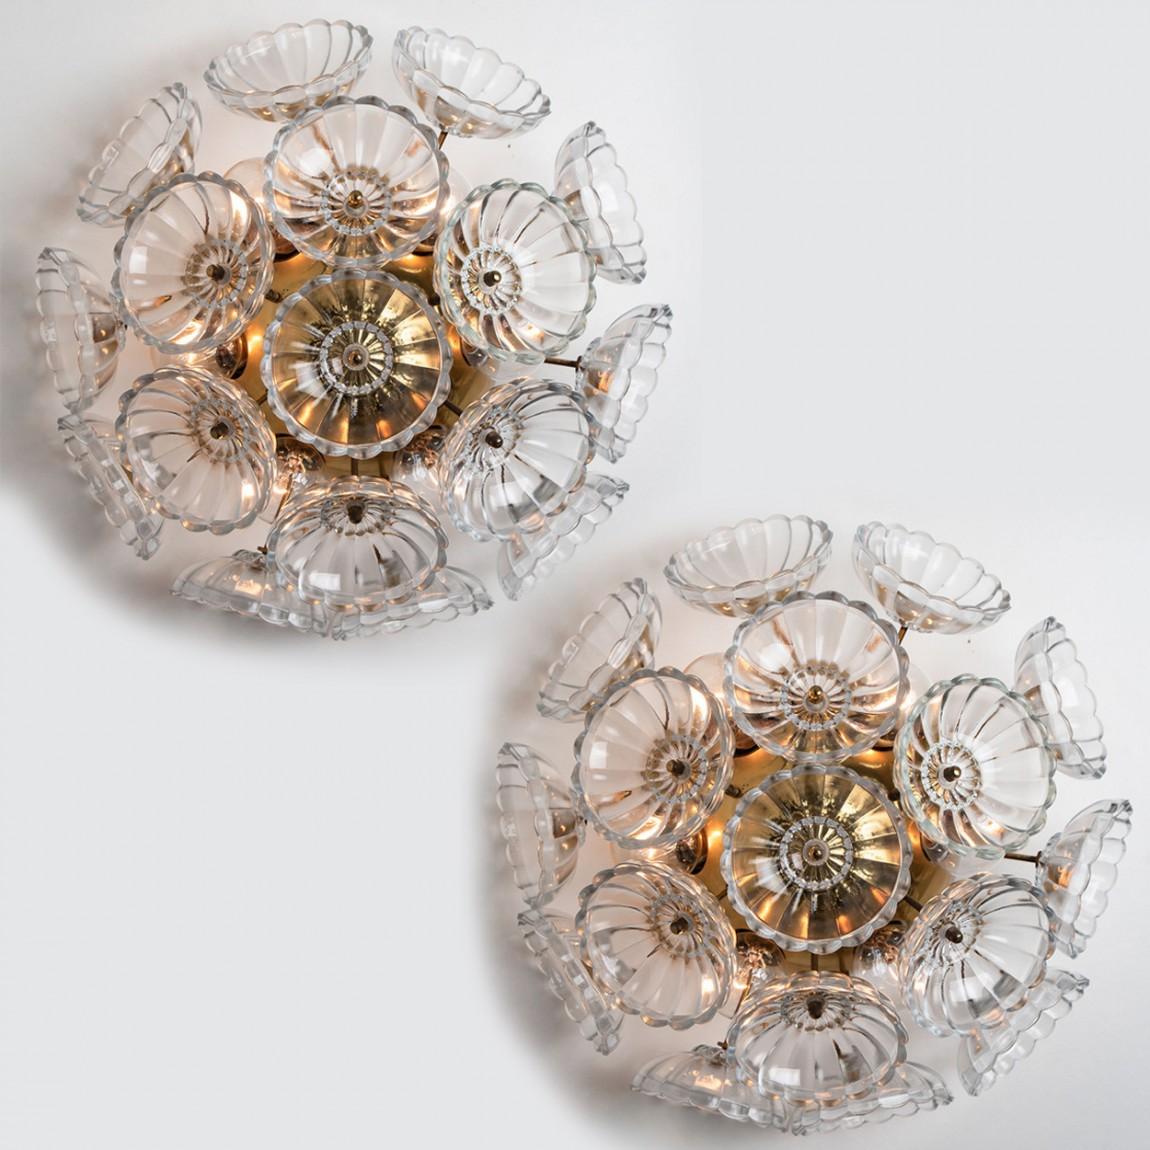 Zwei auffällige Wandleuchten aus floralem Glas und Messing von Emil Stejnar, hergestellt in den 1960er Jahren in Österreich.
Die schweren Klarglasblumen sind auf einen Sputnik-Rahmen aus Messing montiert.
Die Glasstücke sind mit viel Liebe zum